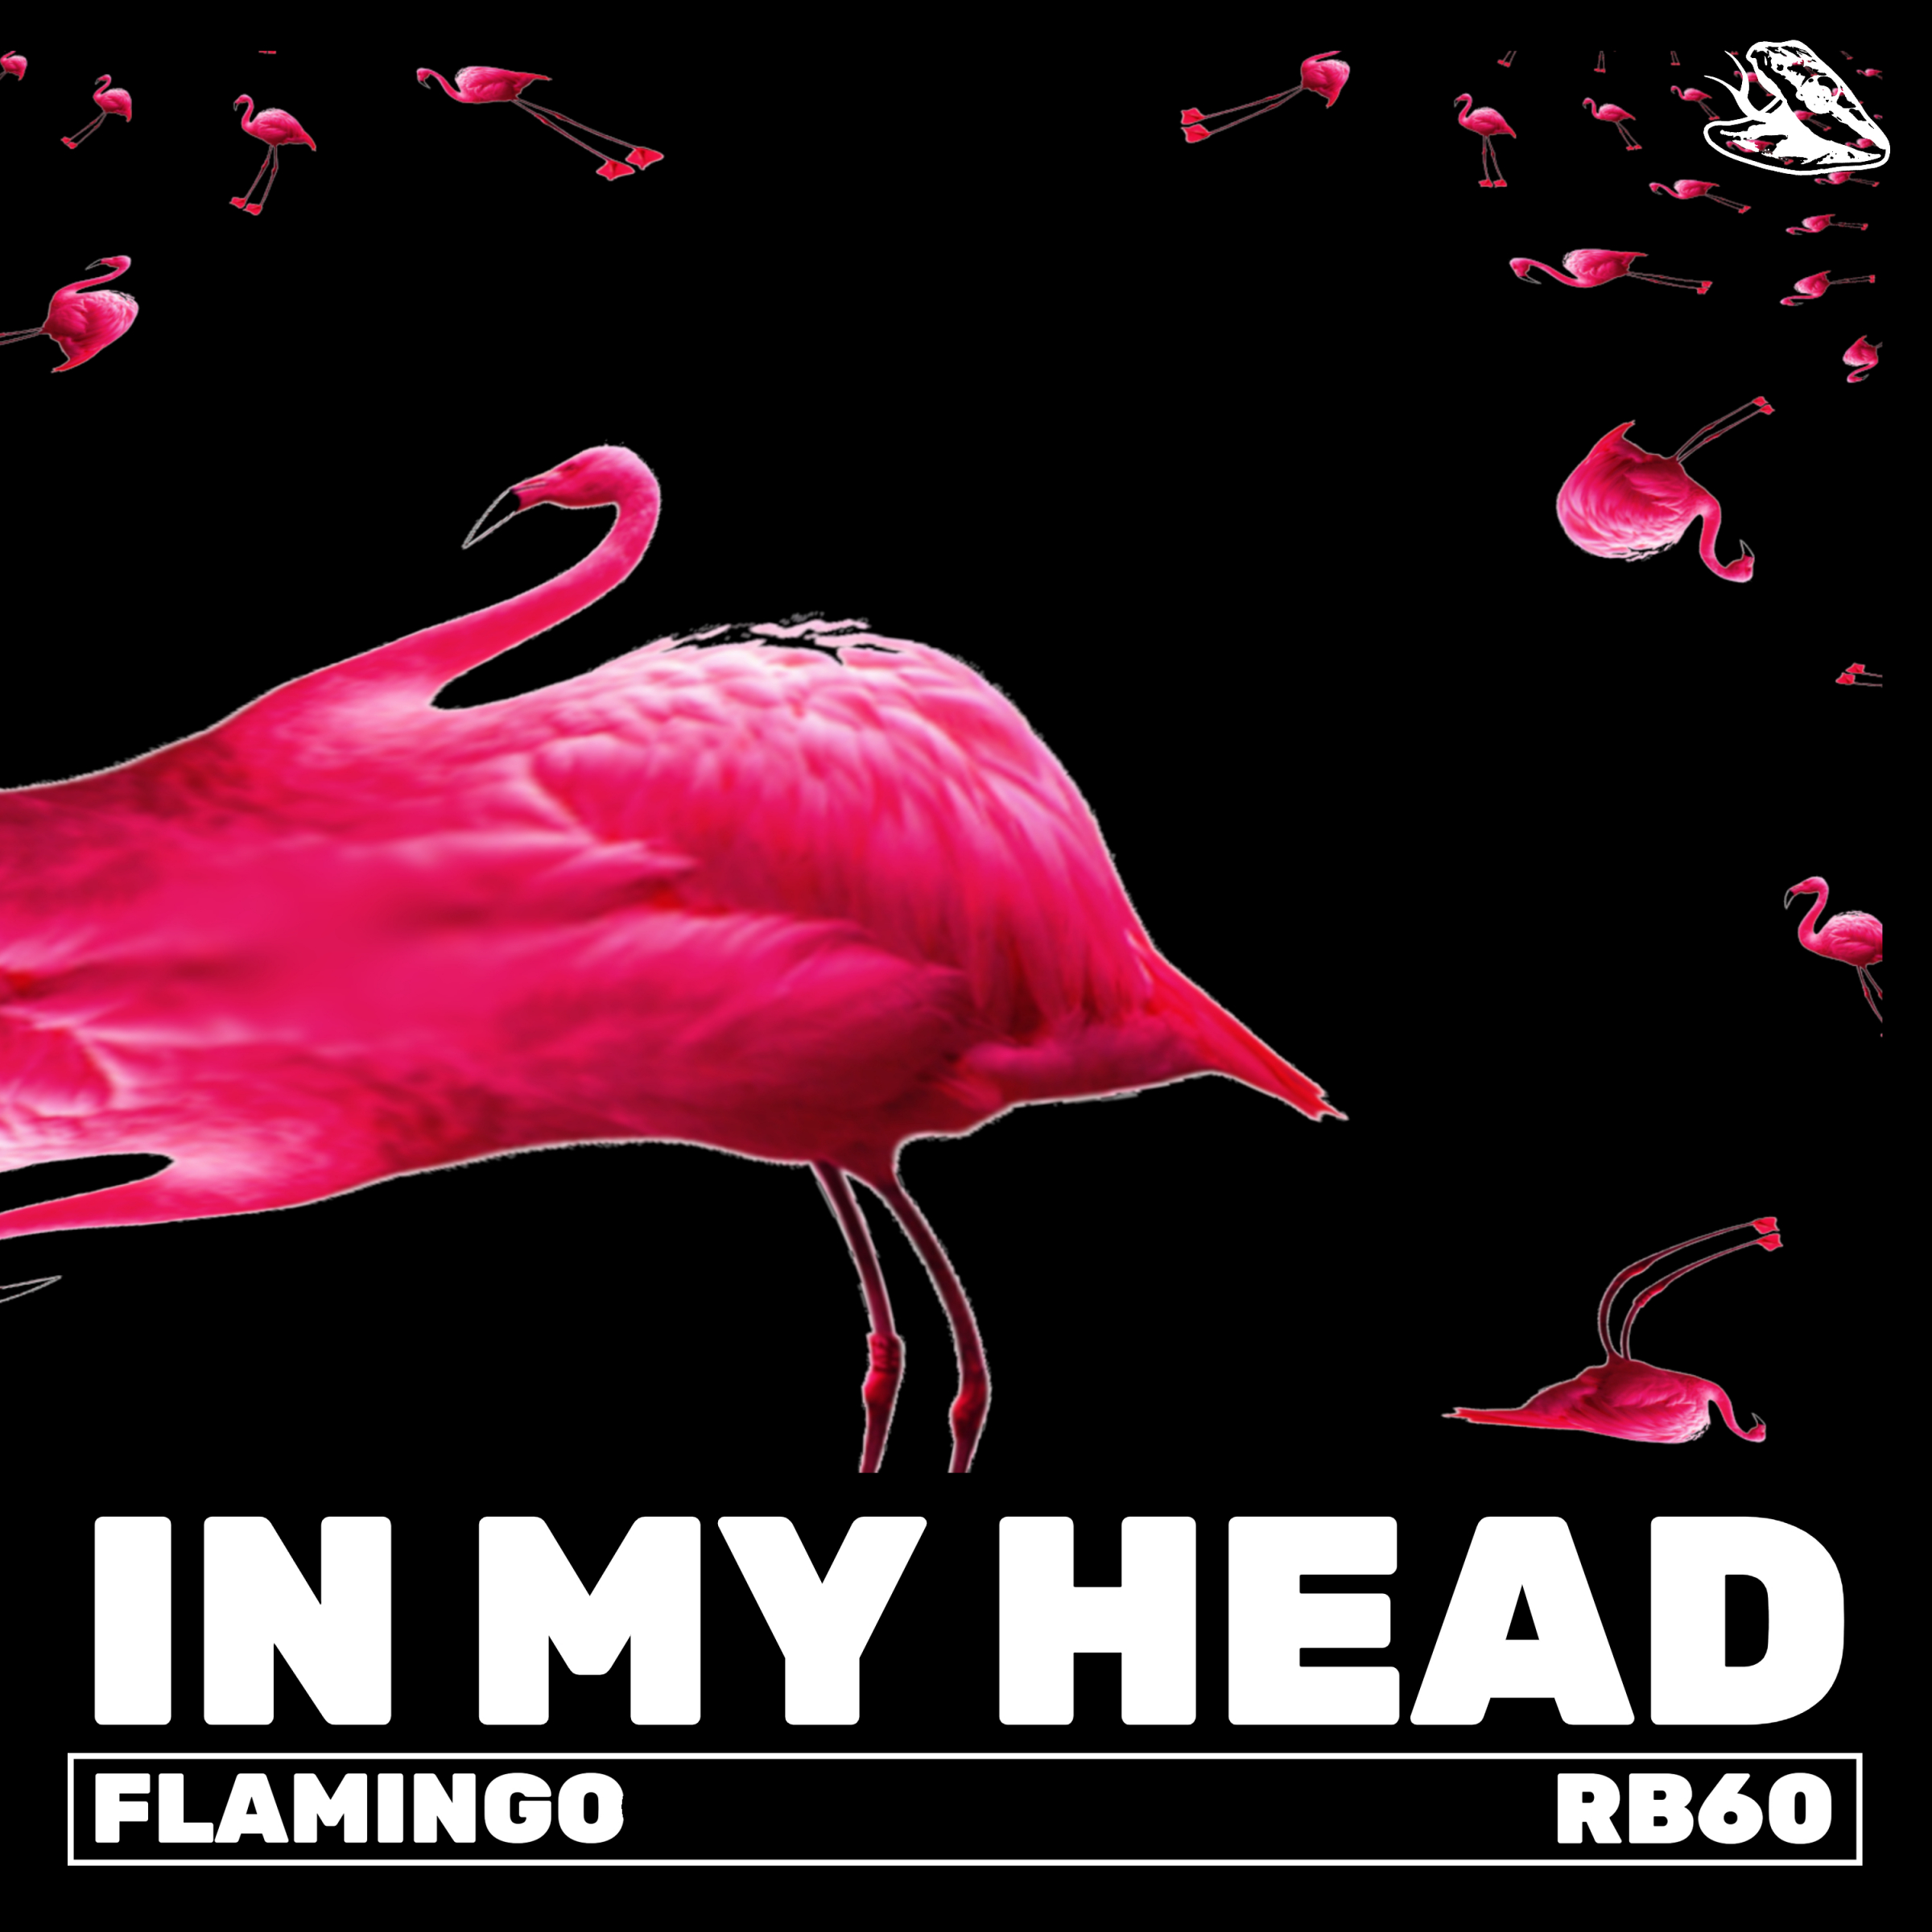 Слушать песню фламинго. Flamingo песня. Обложка к треку Фламинго. Обложка к треку Фламинго в неоне. Фламинго голова вид сверху.